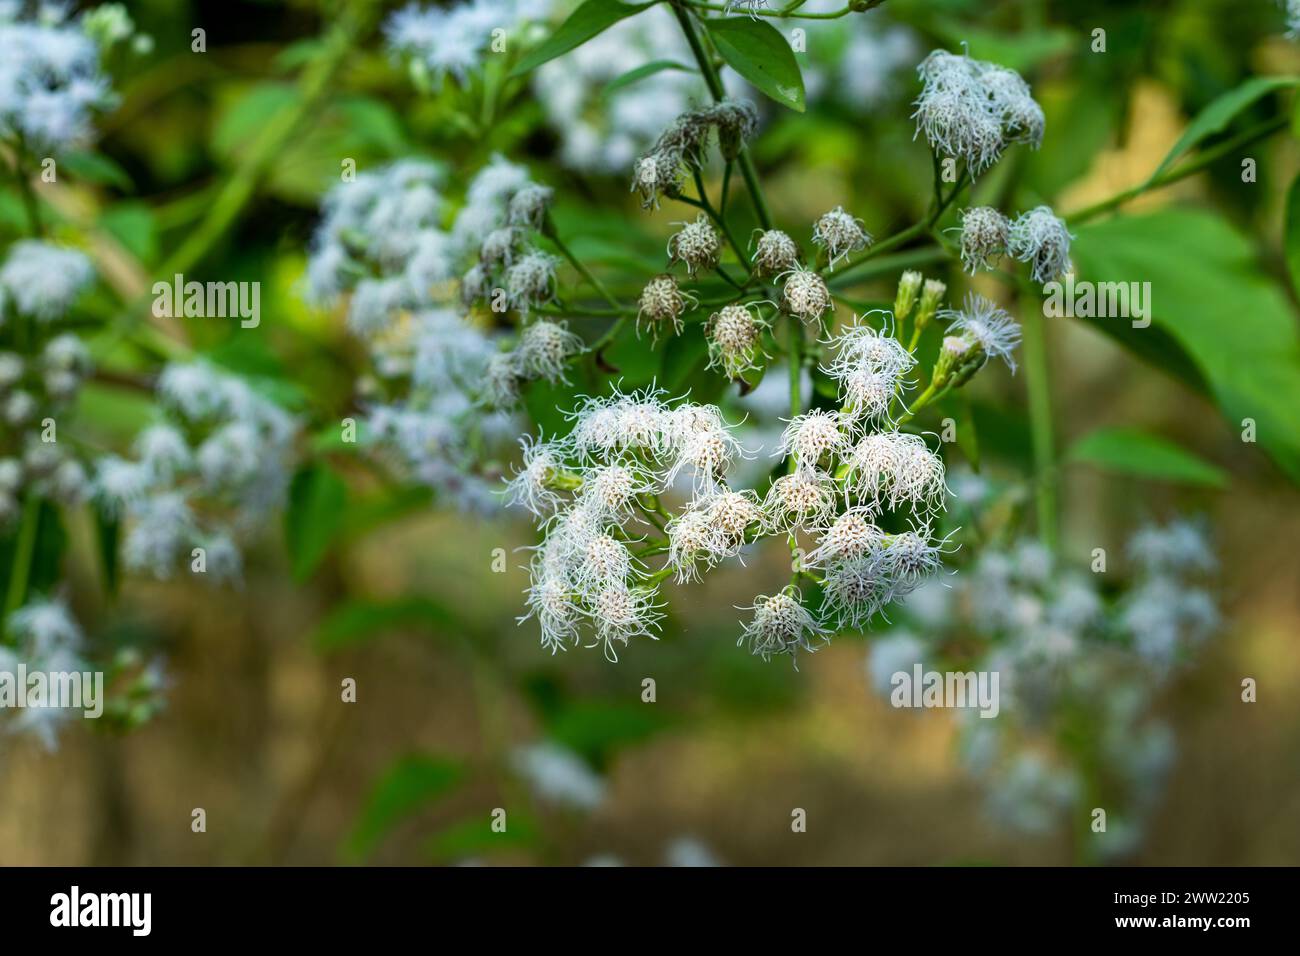 Ageratum oder Bluemink ist ein beliebter Garten, der jährlich sehr einfach aus Samen gezüchtet werden kann. Ageratum Blue Mink blüht mit sehr attraktiven blauen Häusern Stockfoto